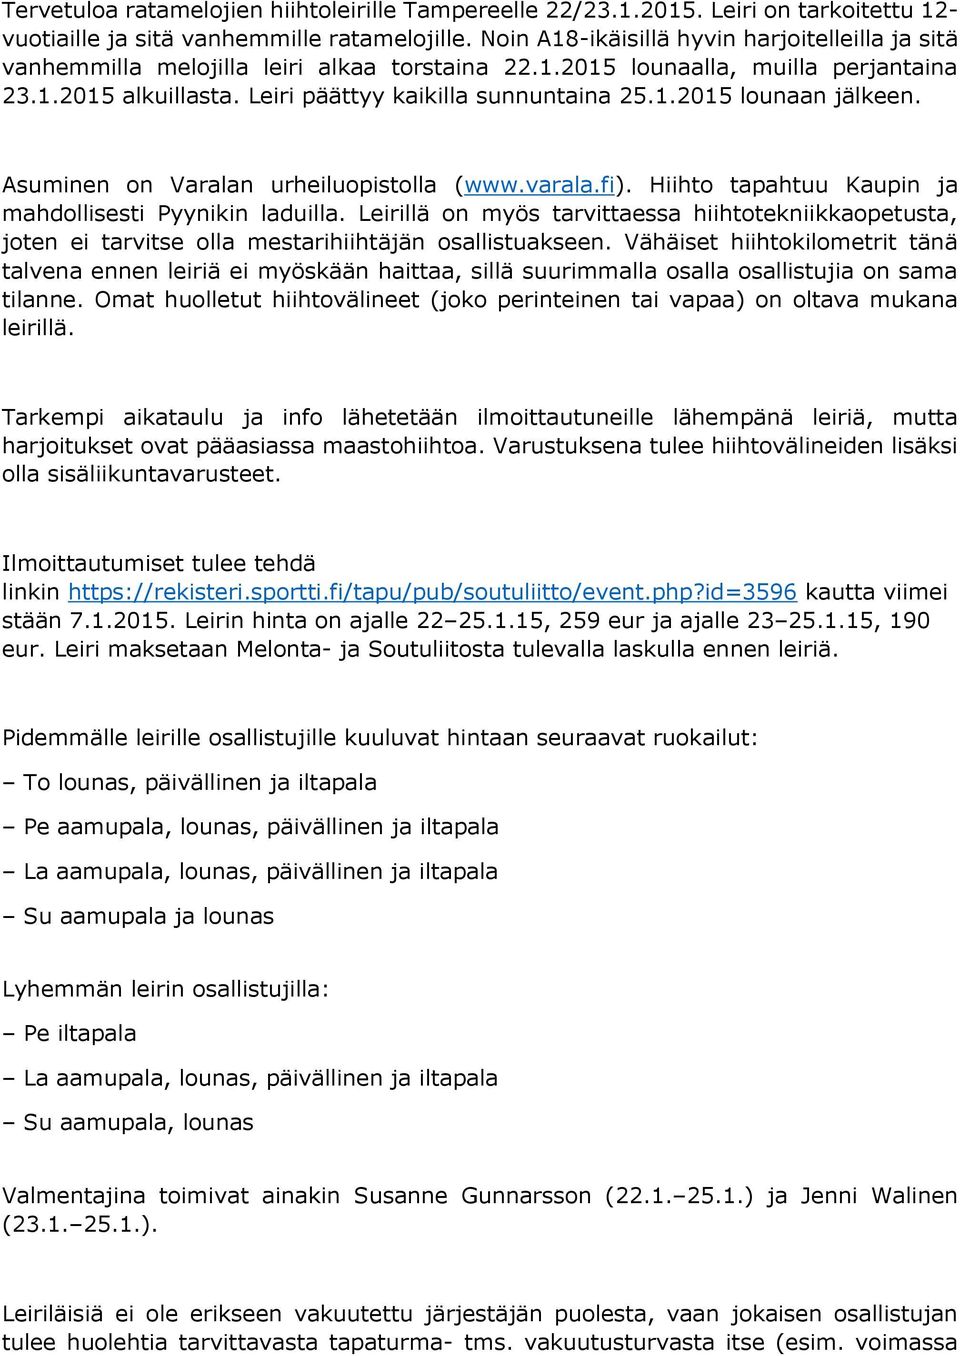 Asuminen on Varalan urheiluopistolla (www.varala.fi). Hiihto tapahtuu Kaupin ja mahdollisesti Pyynikin laduilla.